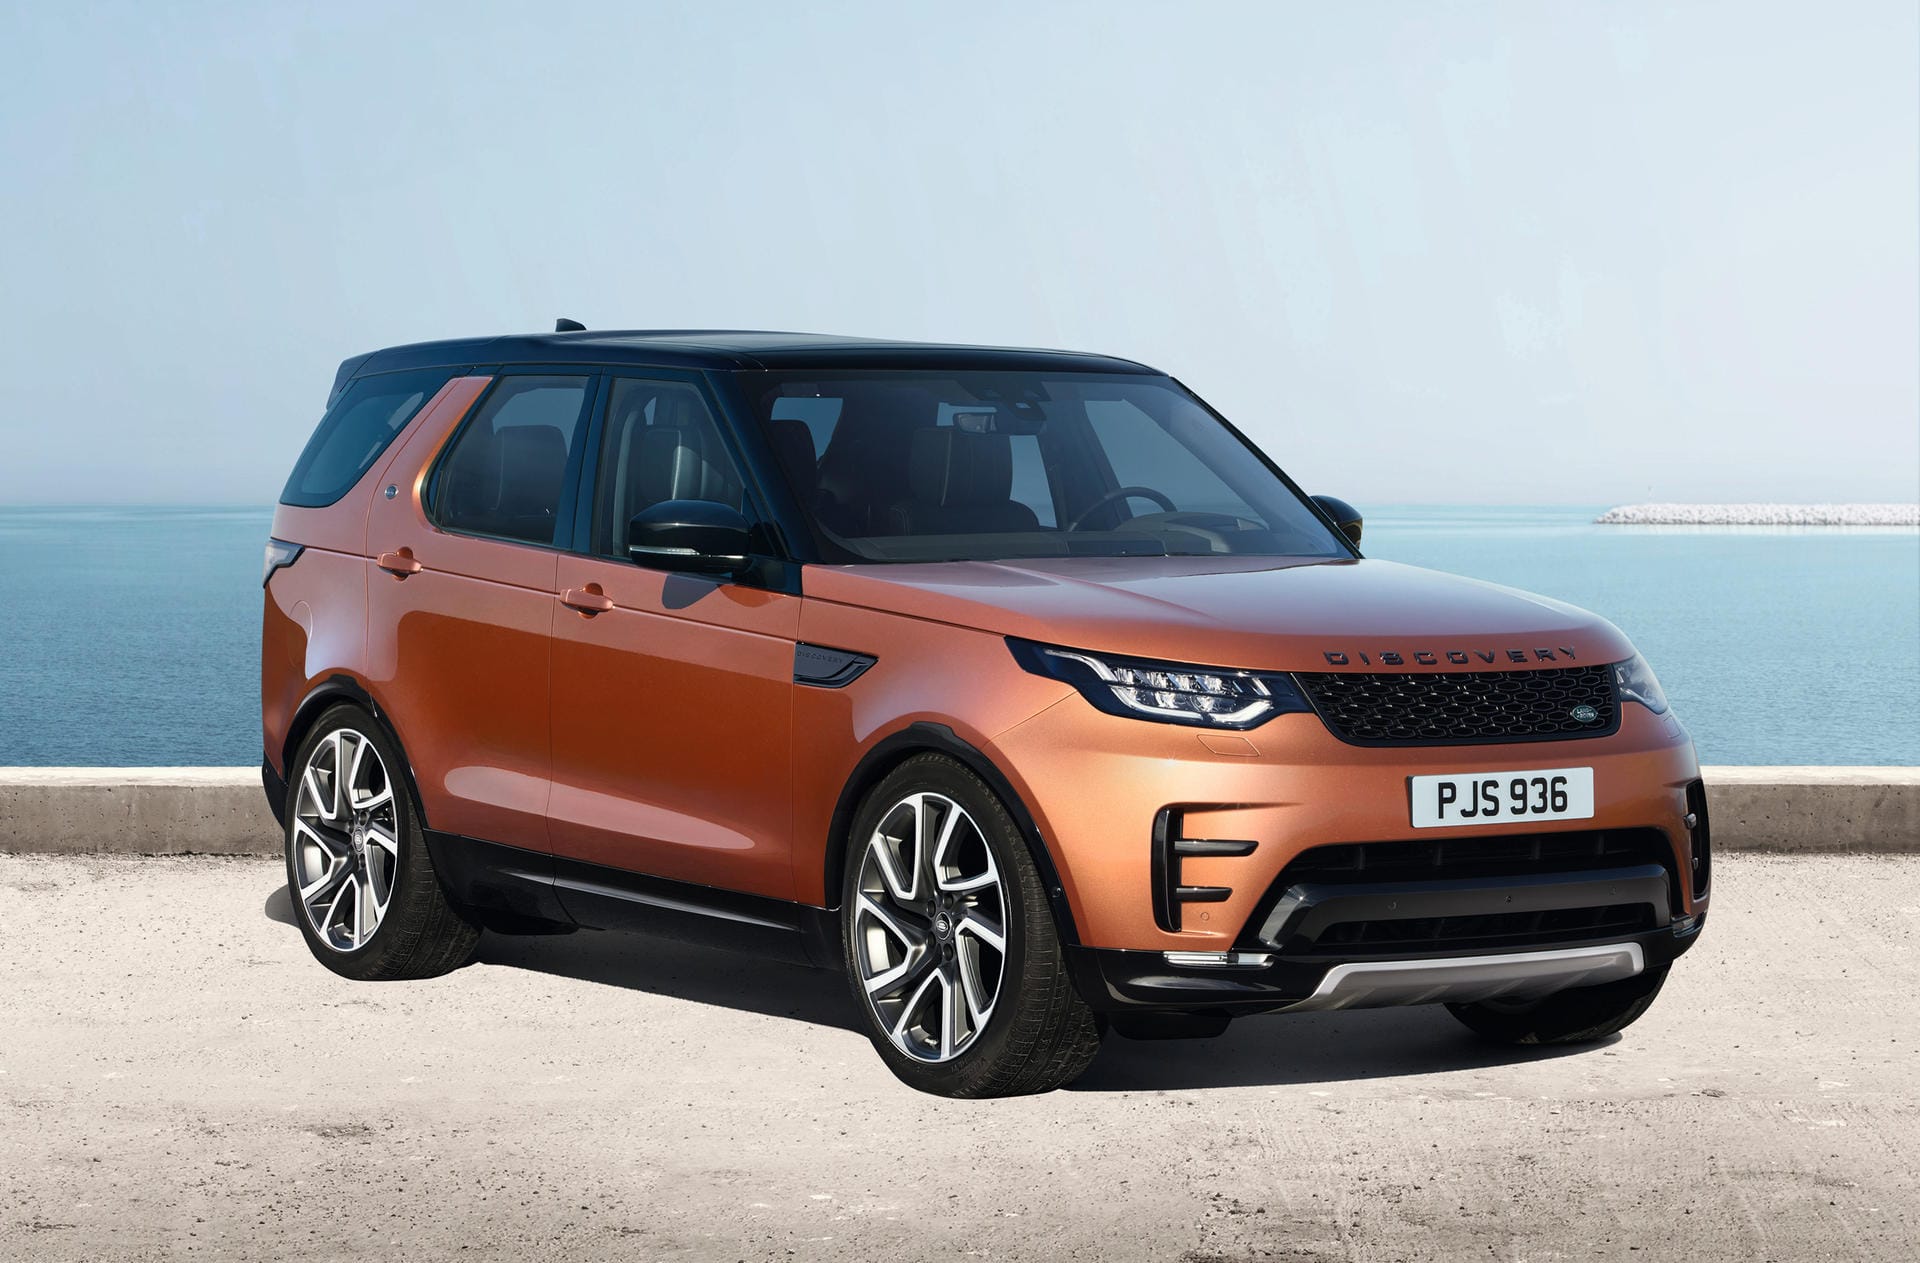 Der aktuelle Discovery ist bereits seit 12 Jahren im Land-Rover-Programm, Zeit also für ein neues Modell. Das kommt im Frühjahr deutlich gewachsen auf den Markt.